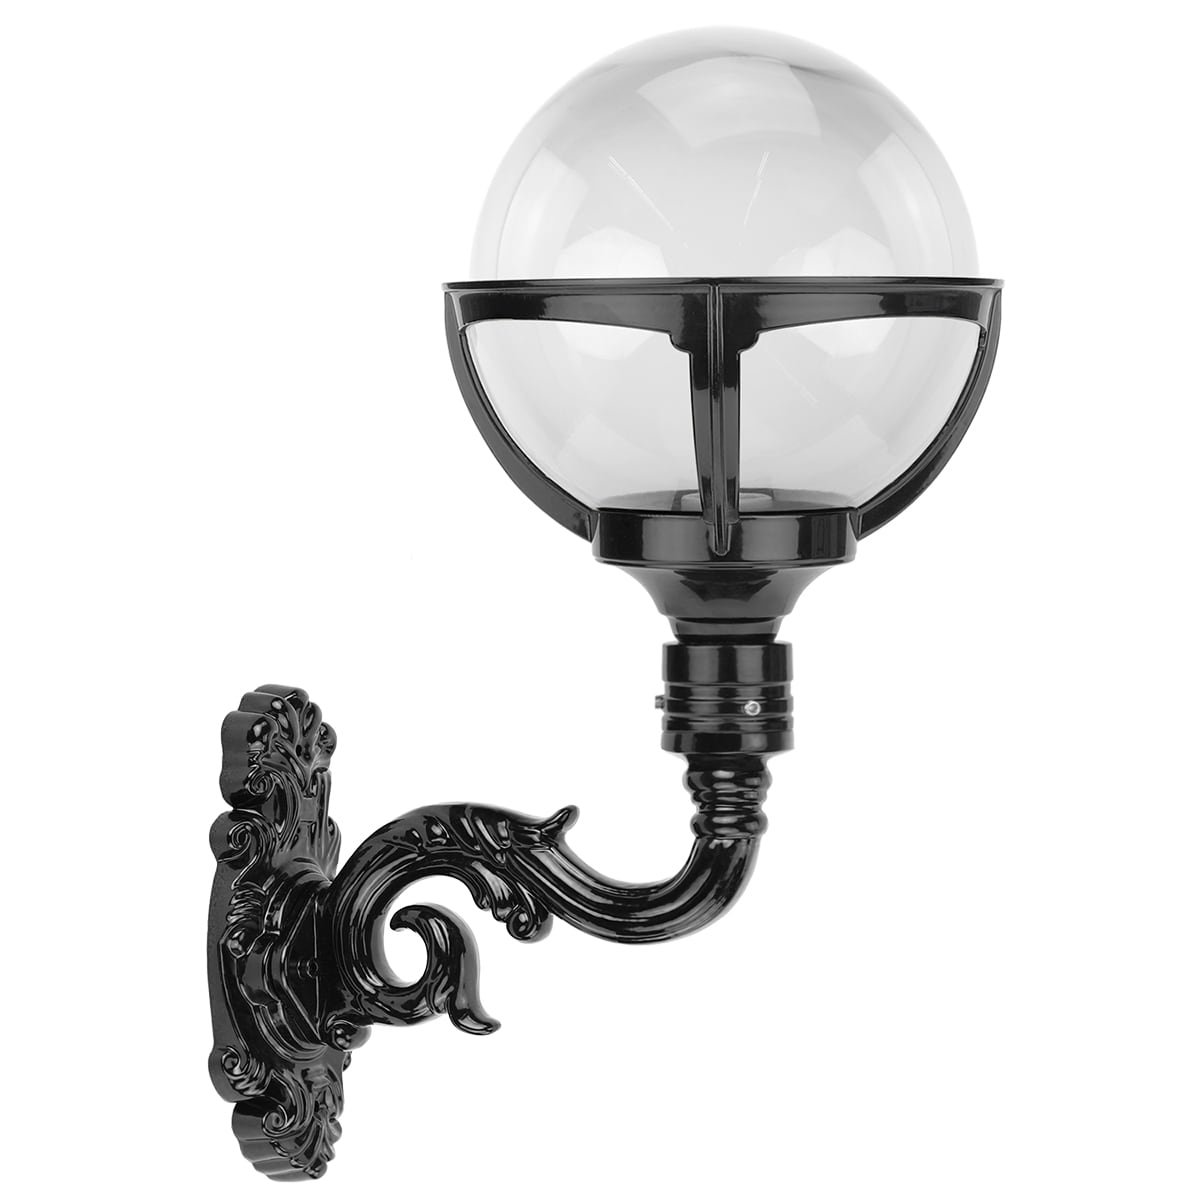 Wall lamp globe lighting Ketelhaven - 55 cm